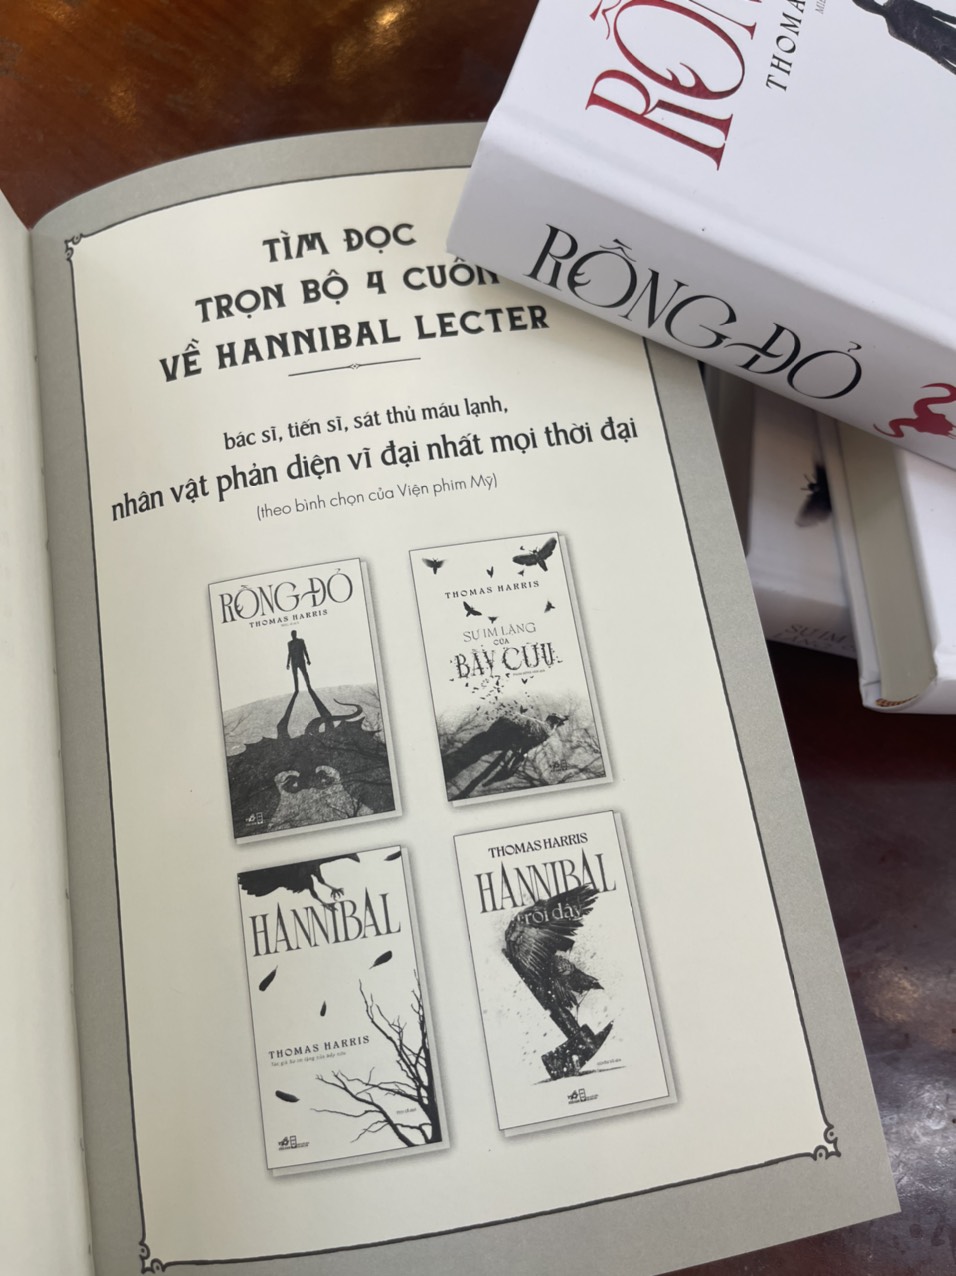 [boxset giới hạn 300 hộp gồm 4 tập bìa cứng của Nhã Nam] – HANNIBAL series – Thomas Harris – Rồng đỏ, Sự im lặng của bầy cừu, Hannibal, Hannibal trỗi dậy